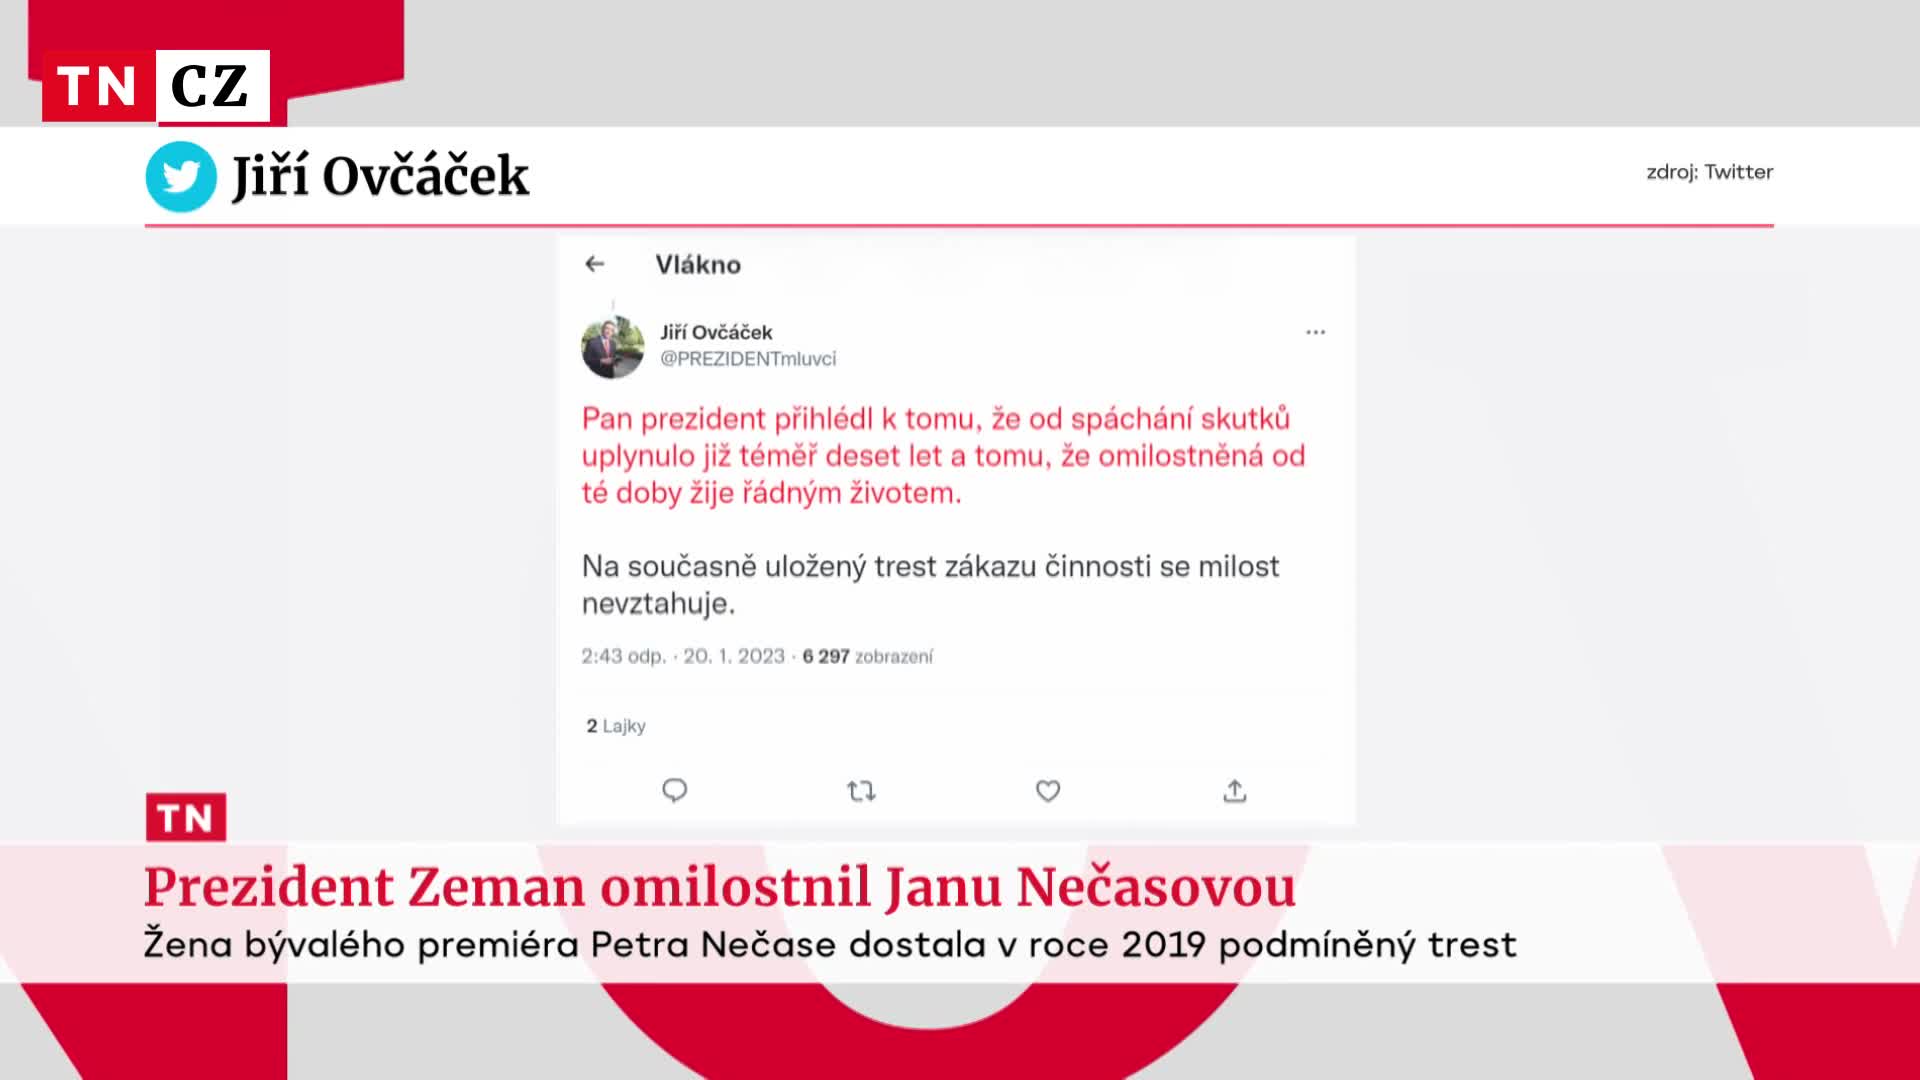 Prezident Zeman udělil další milost. Prominul podmínku Janě Nečasové